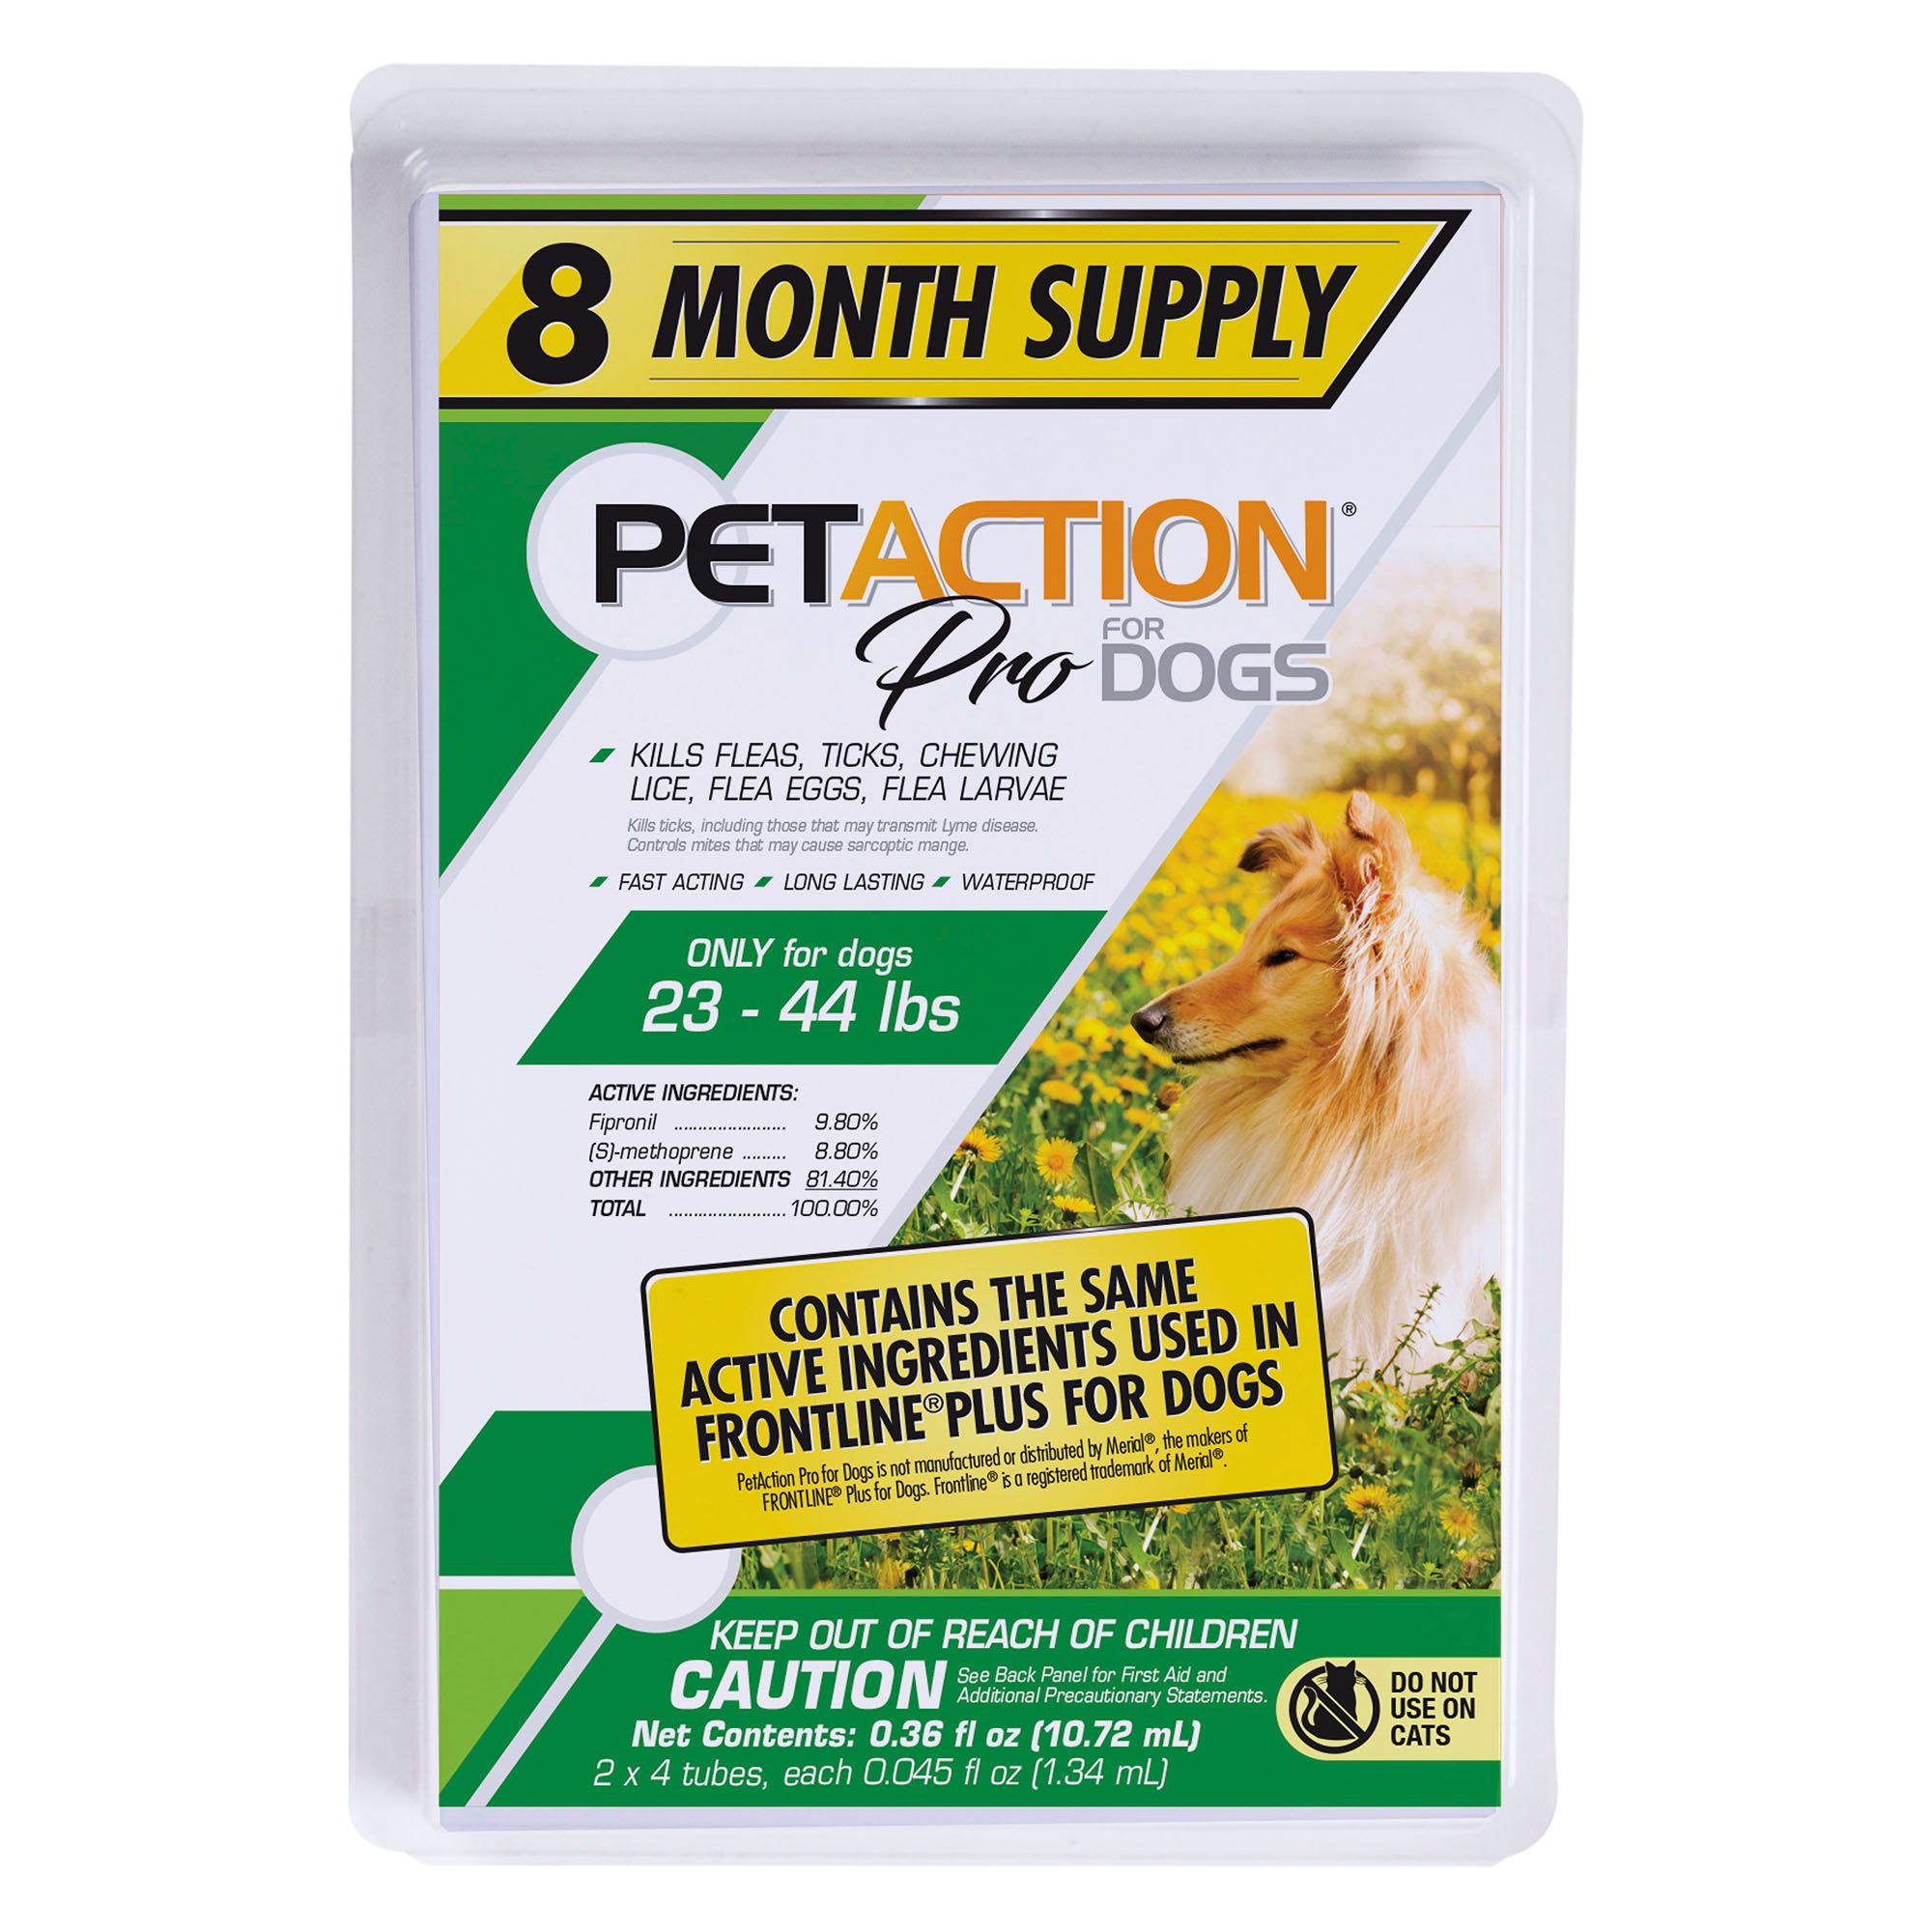 TOTAL CARE - Flea & Tick Control Plus for Medium Dogs - Purina